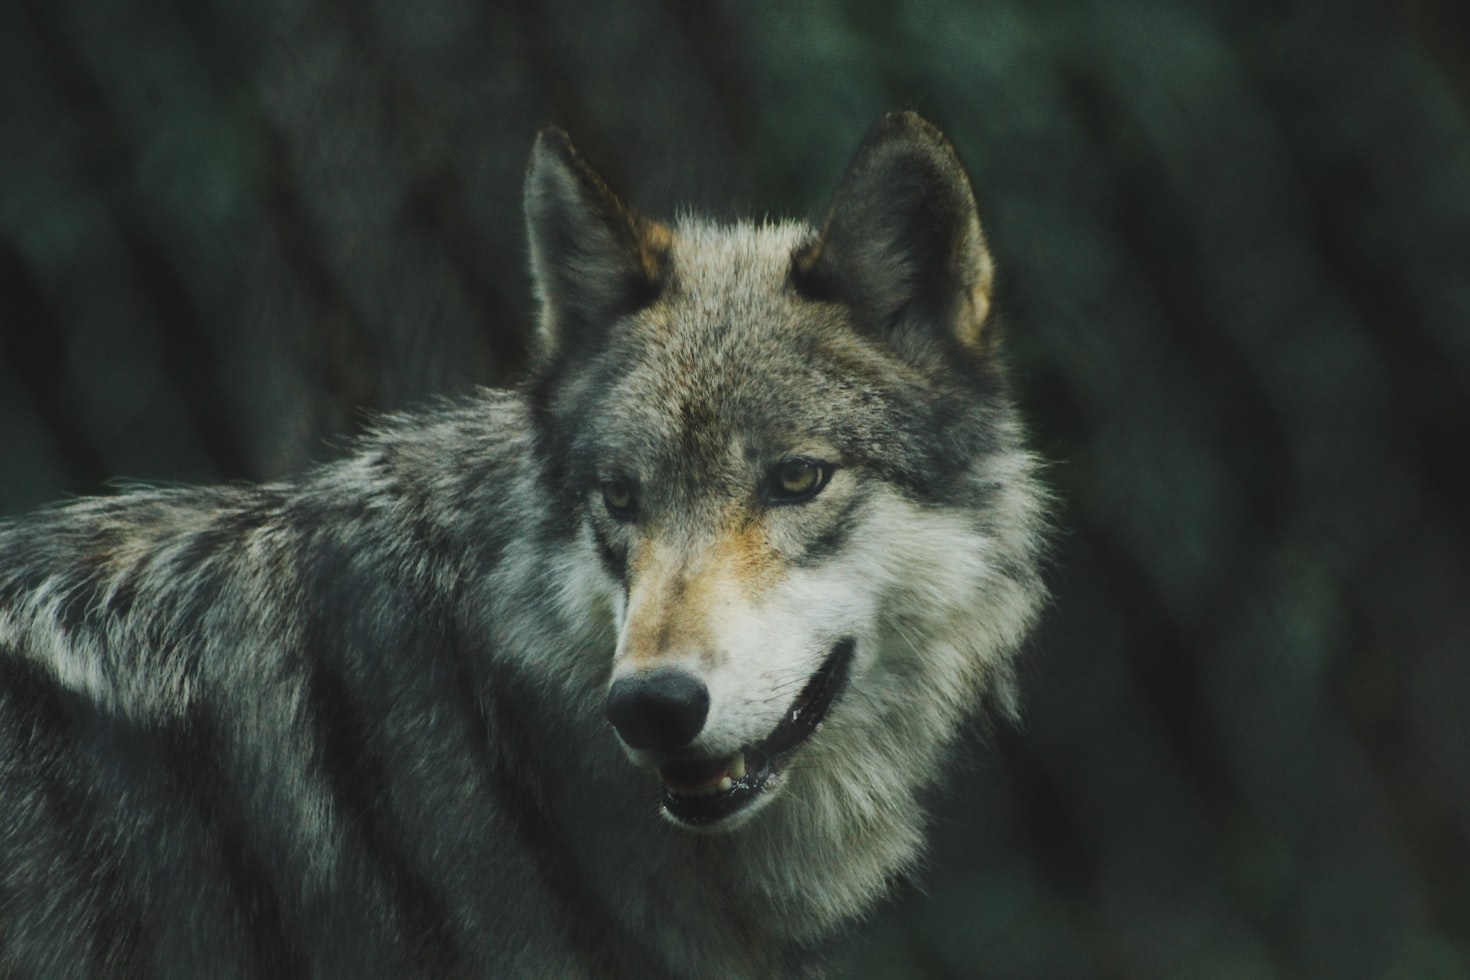 내 안의 두 늑대에 대한 체로키 부족의 지혜에서 배우는 경제적 성공 전략